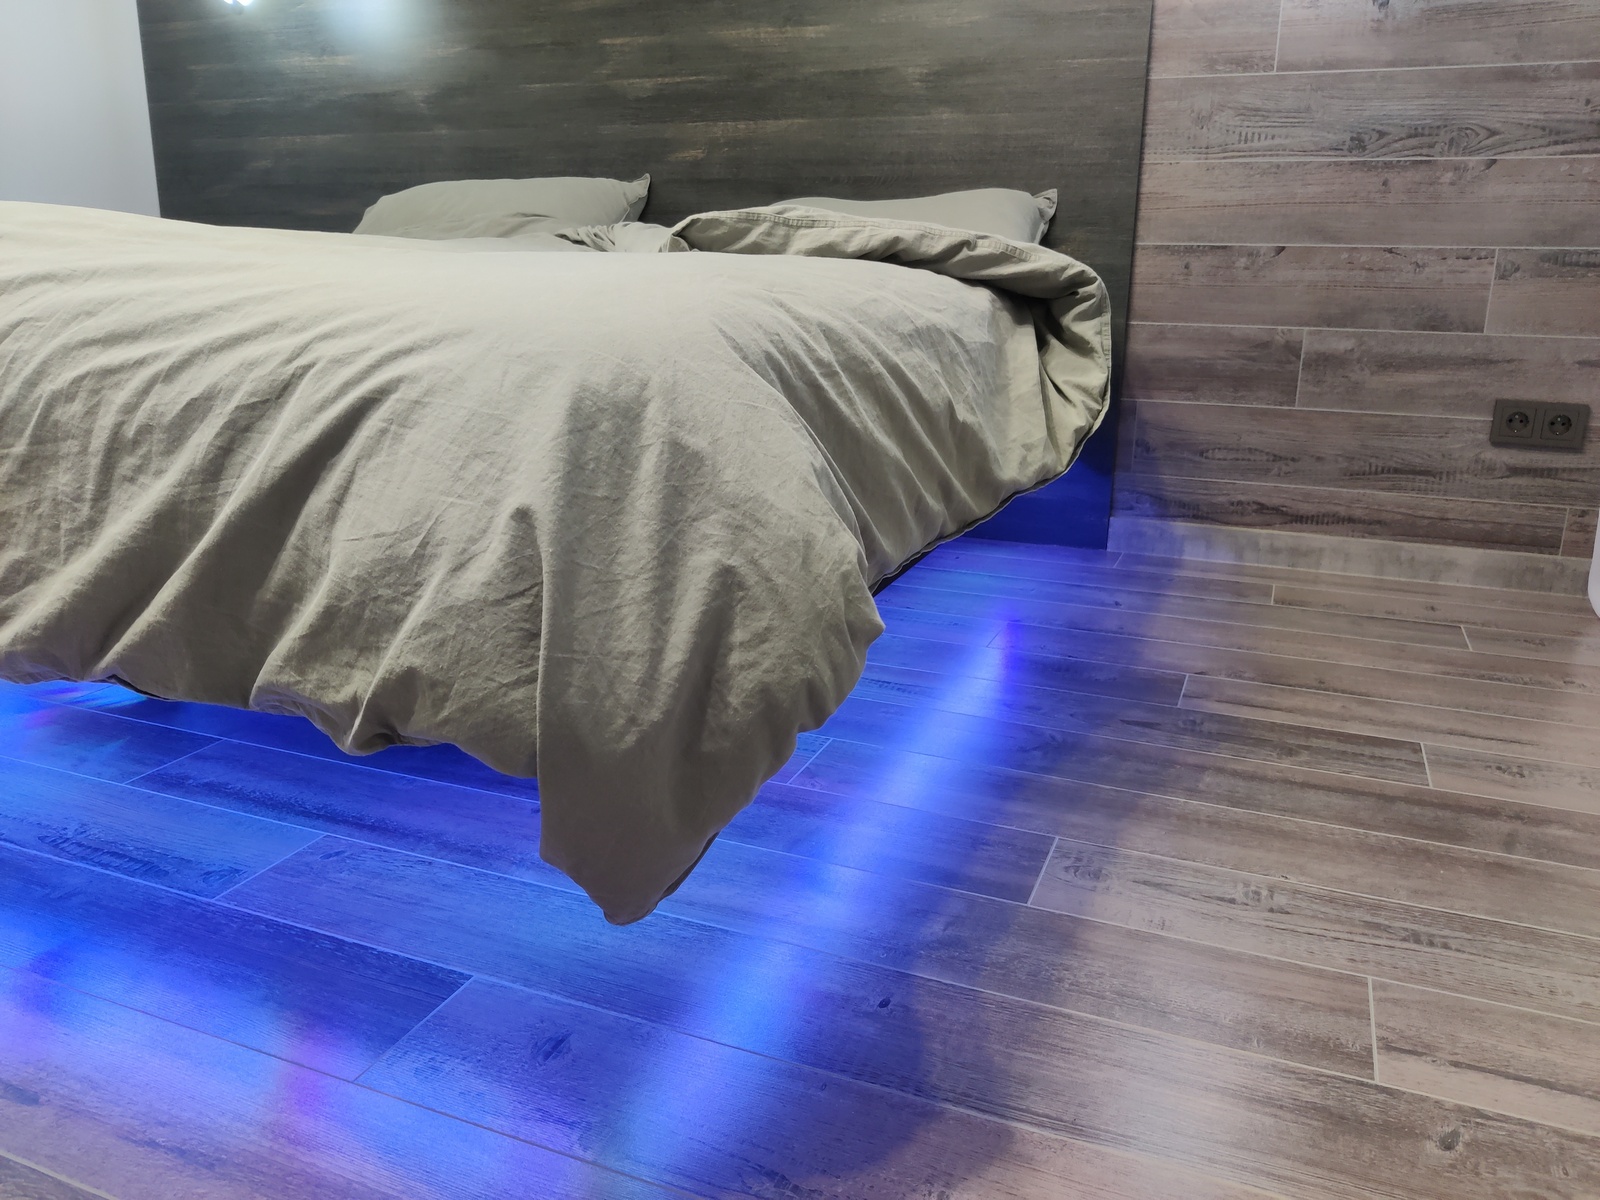 Парящие кровати TwoSky. Какая подсветка у парящей кровати? фото